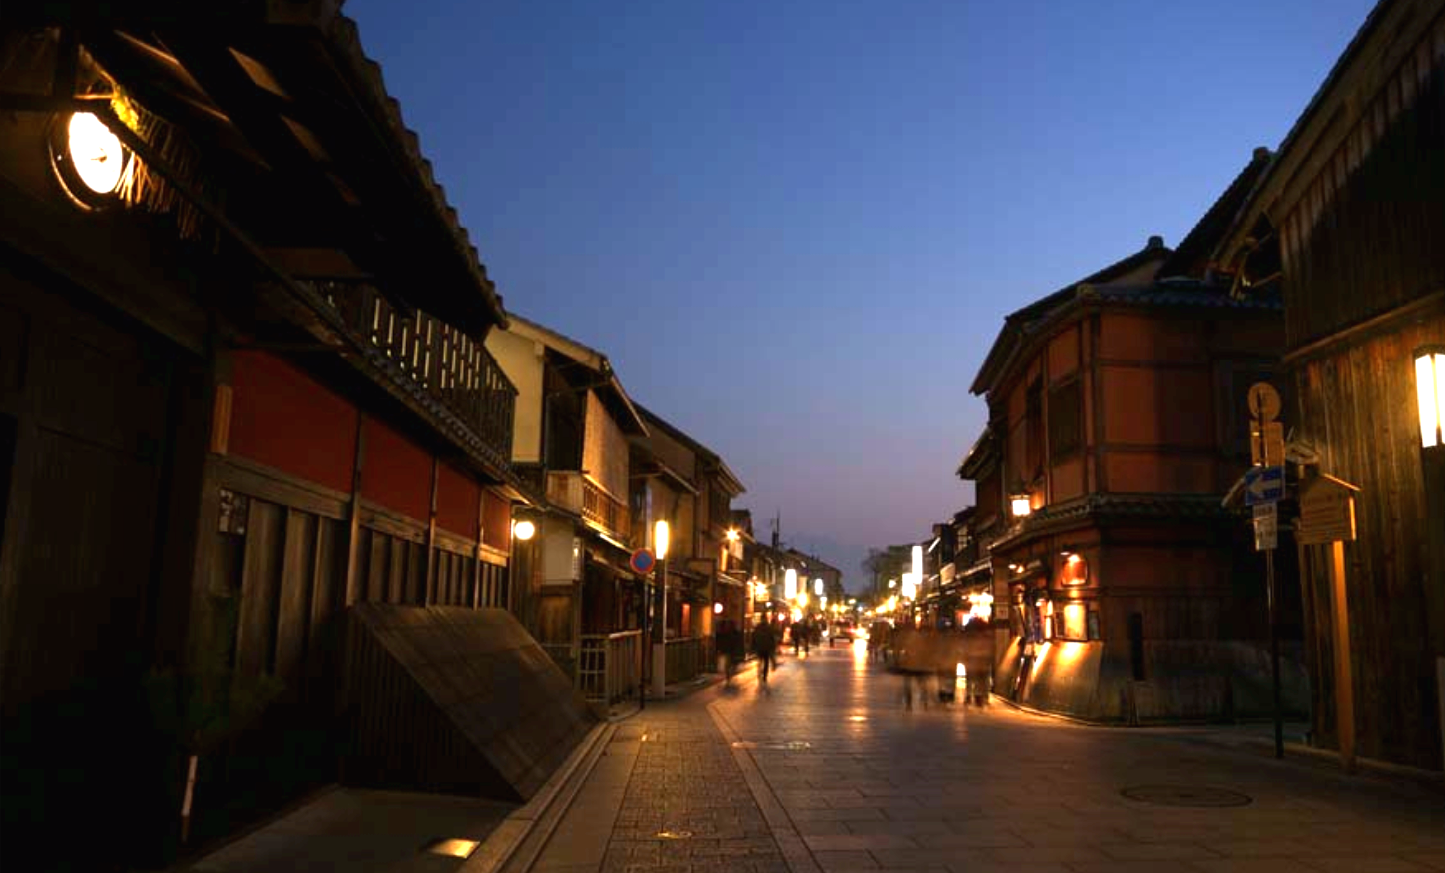 祇園界隈は、昔ながらの街並みが多く残り外国人観光客に人気のエリア